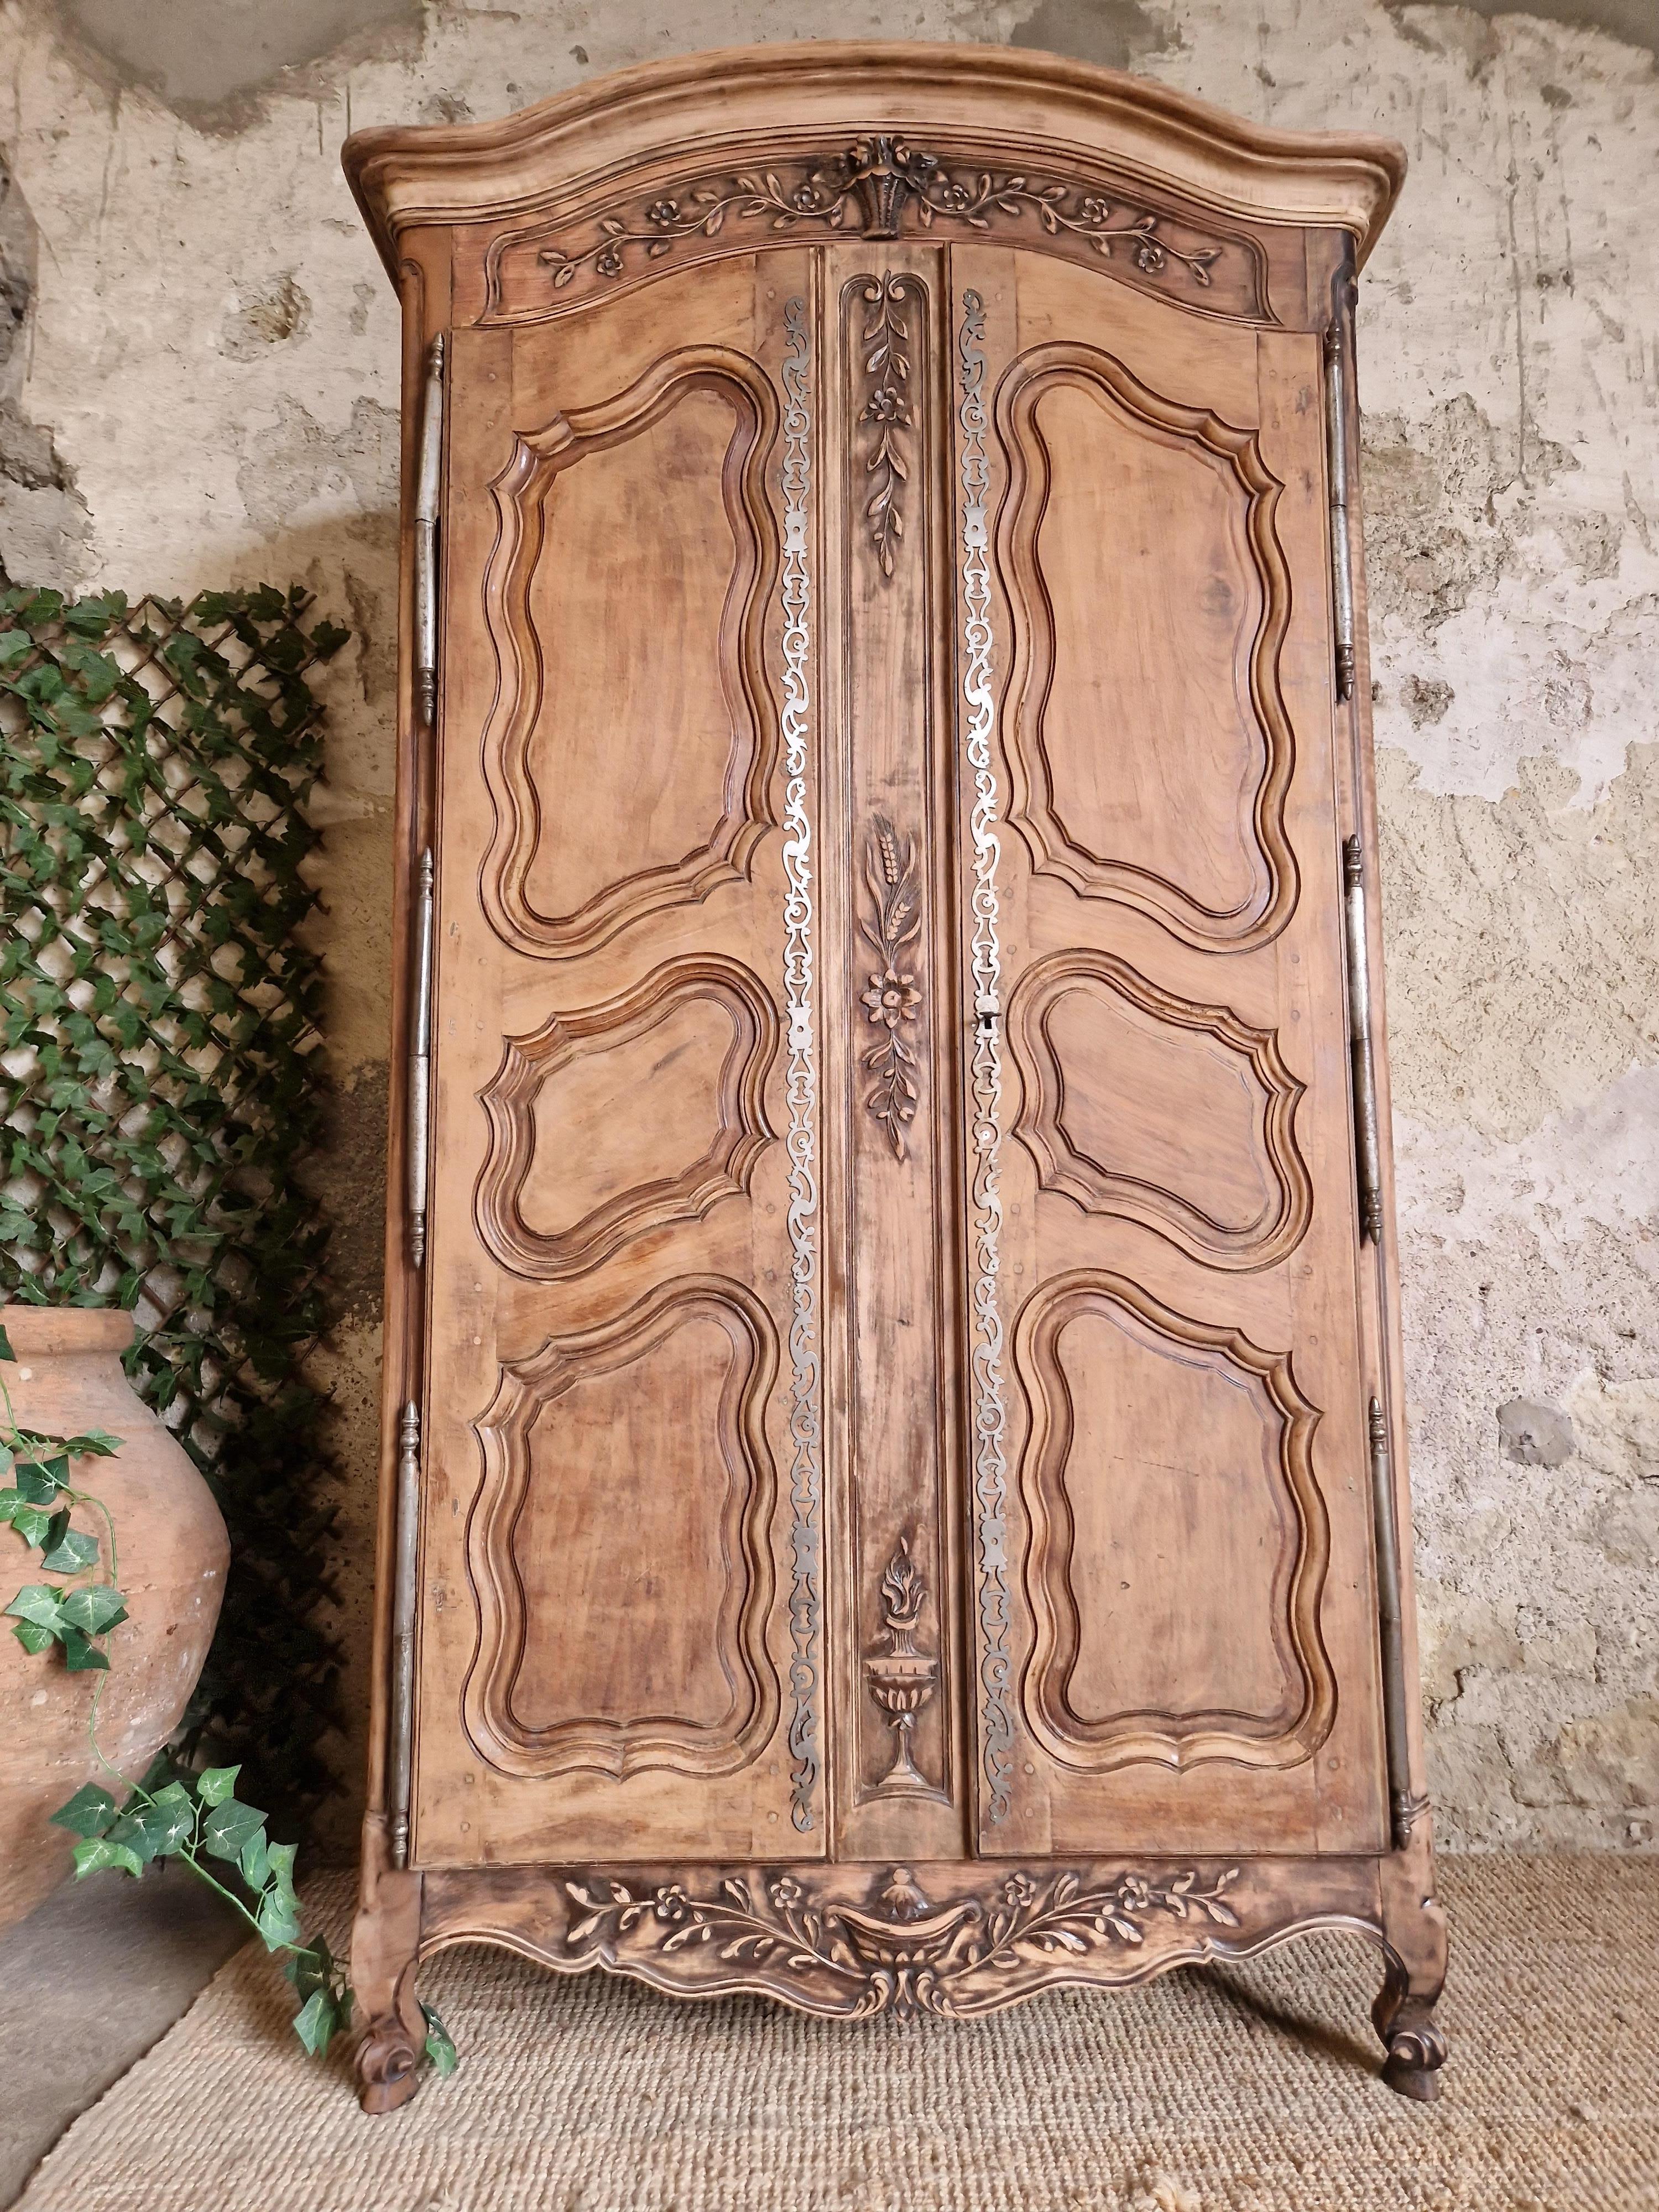 Dieser schöne freistehende Schrank aus dem 19. Jahrhundert ist aus Massivholz gefertigt. Dieses antike Stück verfügt über Schnitzereien, dekorative Plaketten aus Eisen und ein funktionierendes Schloss. Die Oberfläche aus Massivholz wurde abgebeizt,